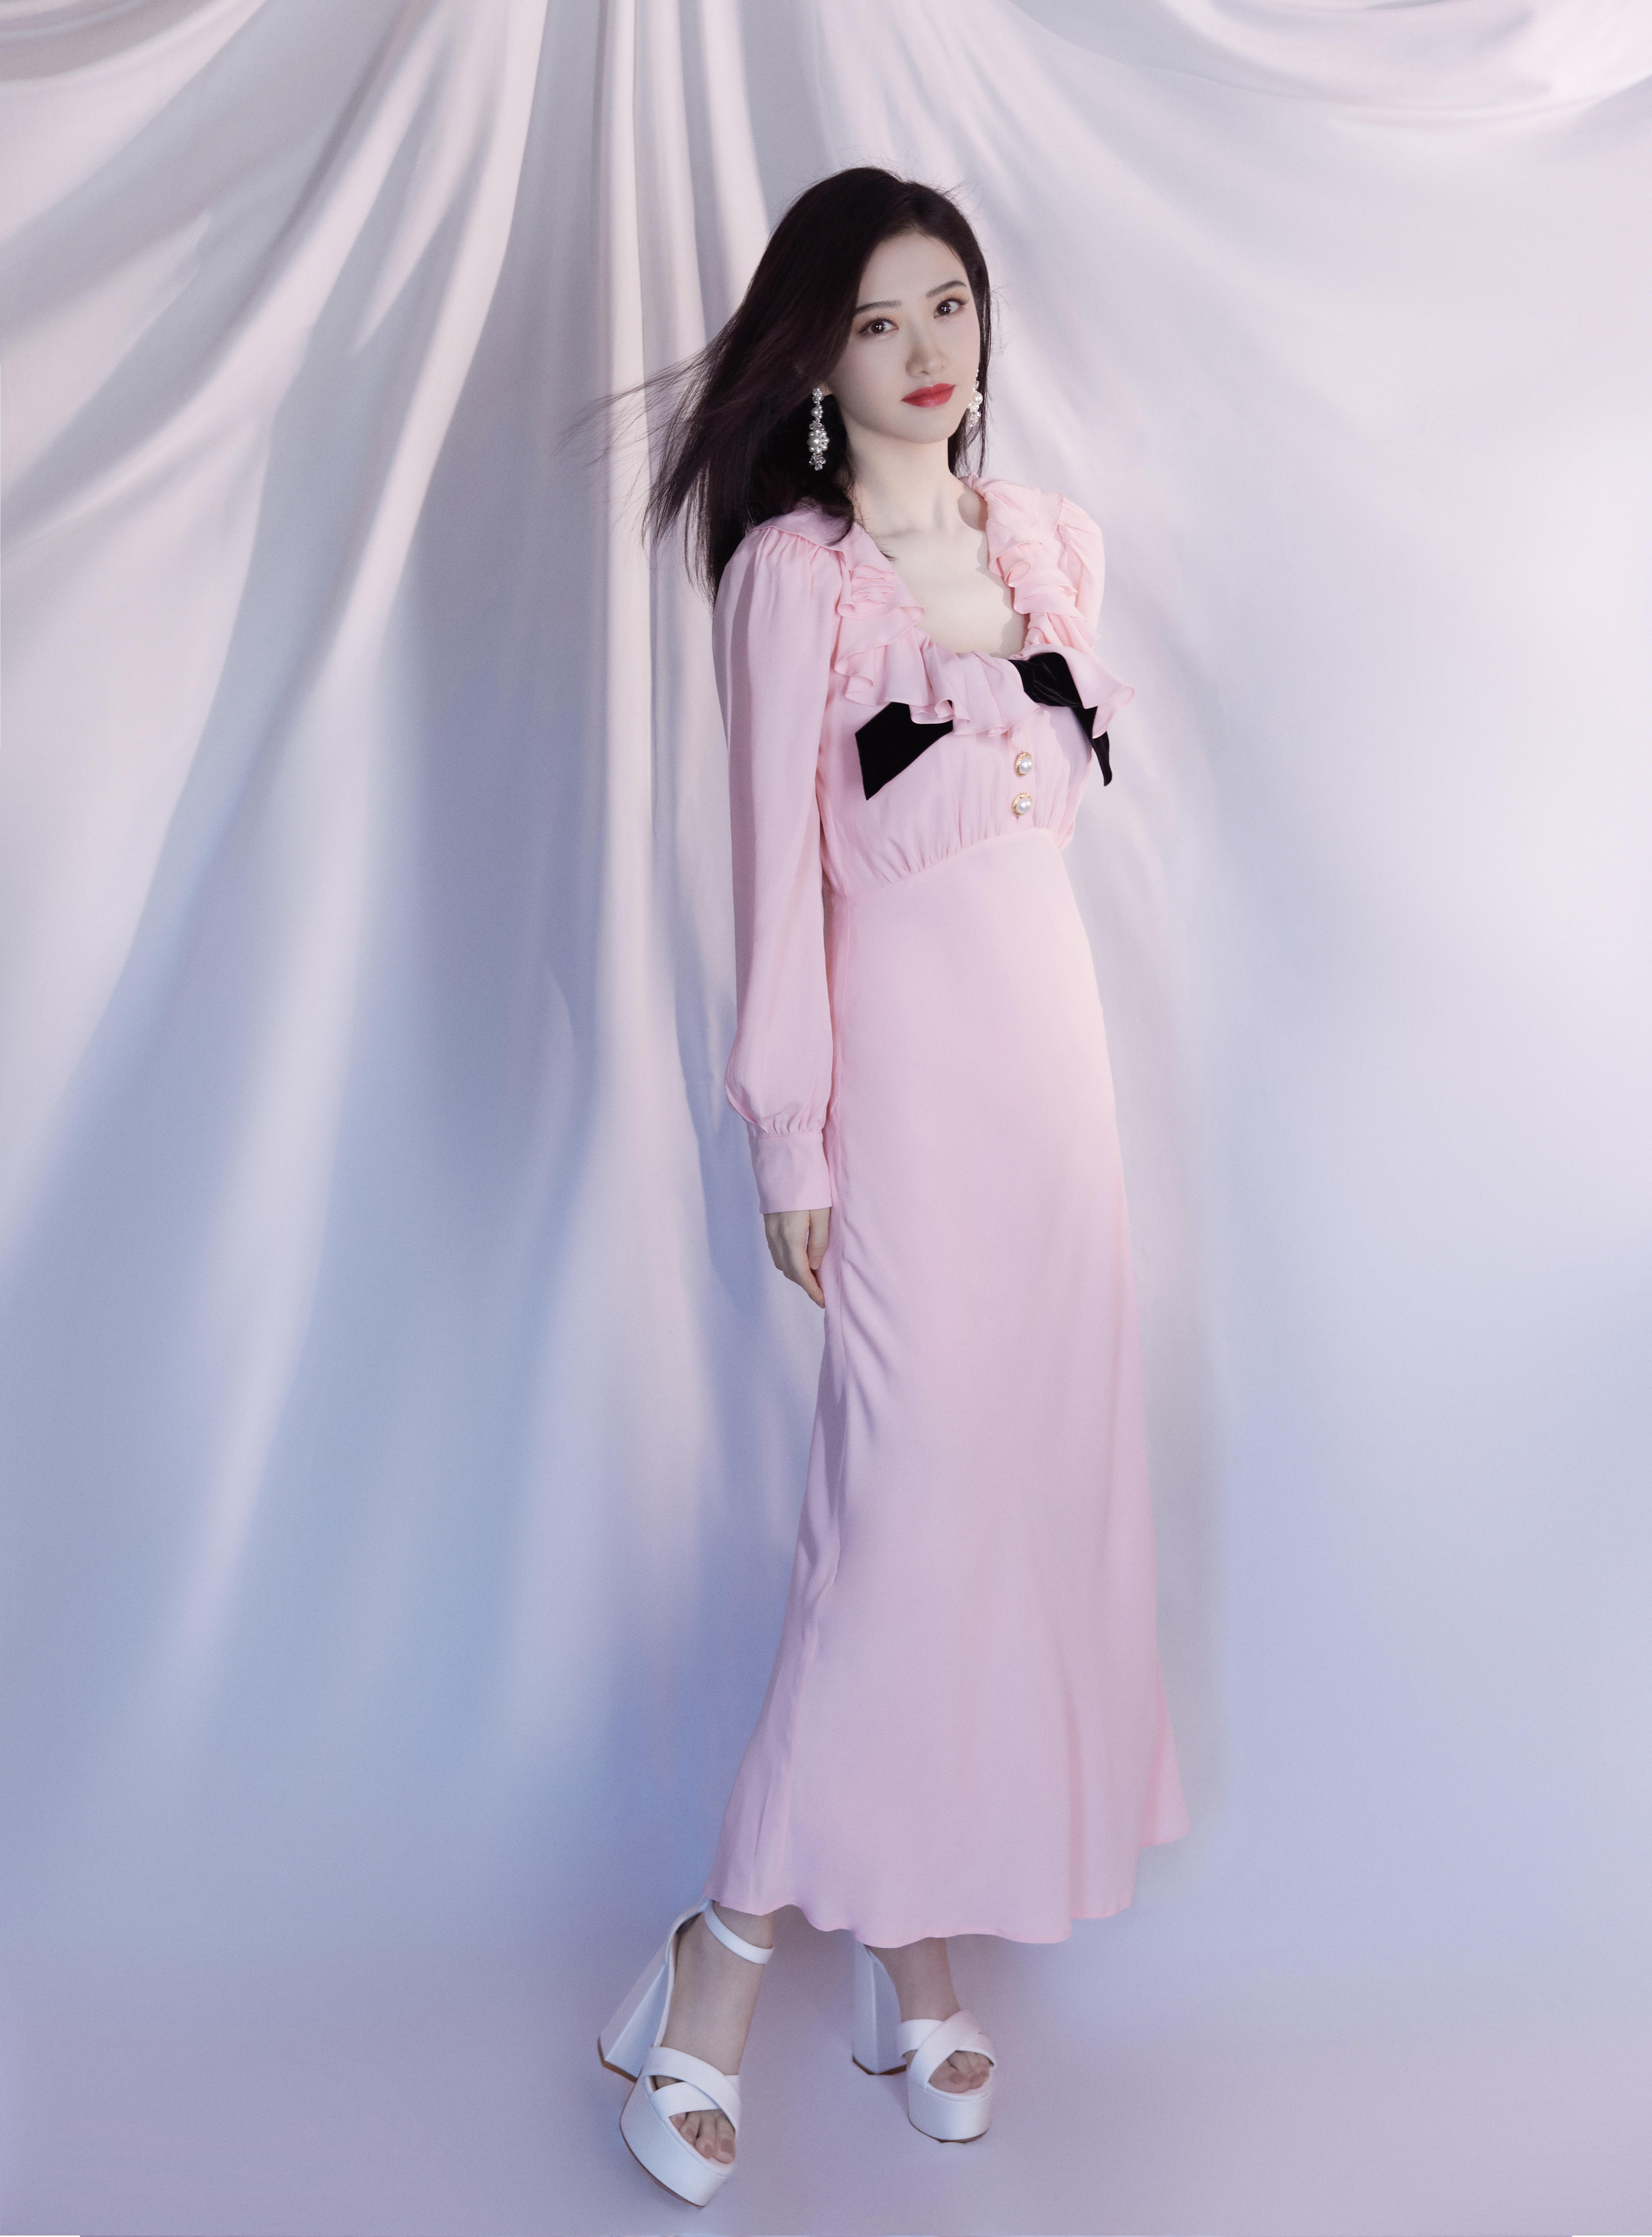 甜美的小公主景甜 分享粉色连身礼服裙娴静写真,1 (9)